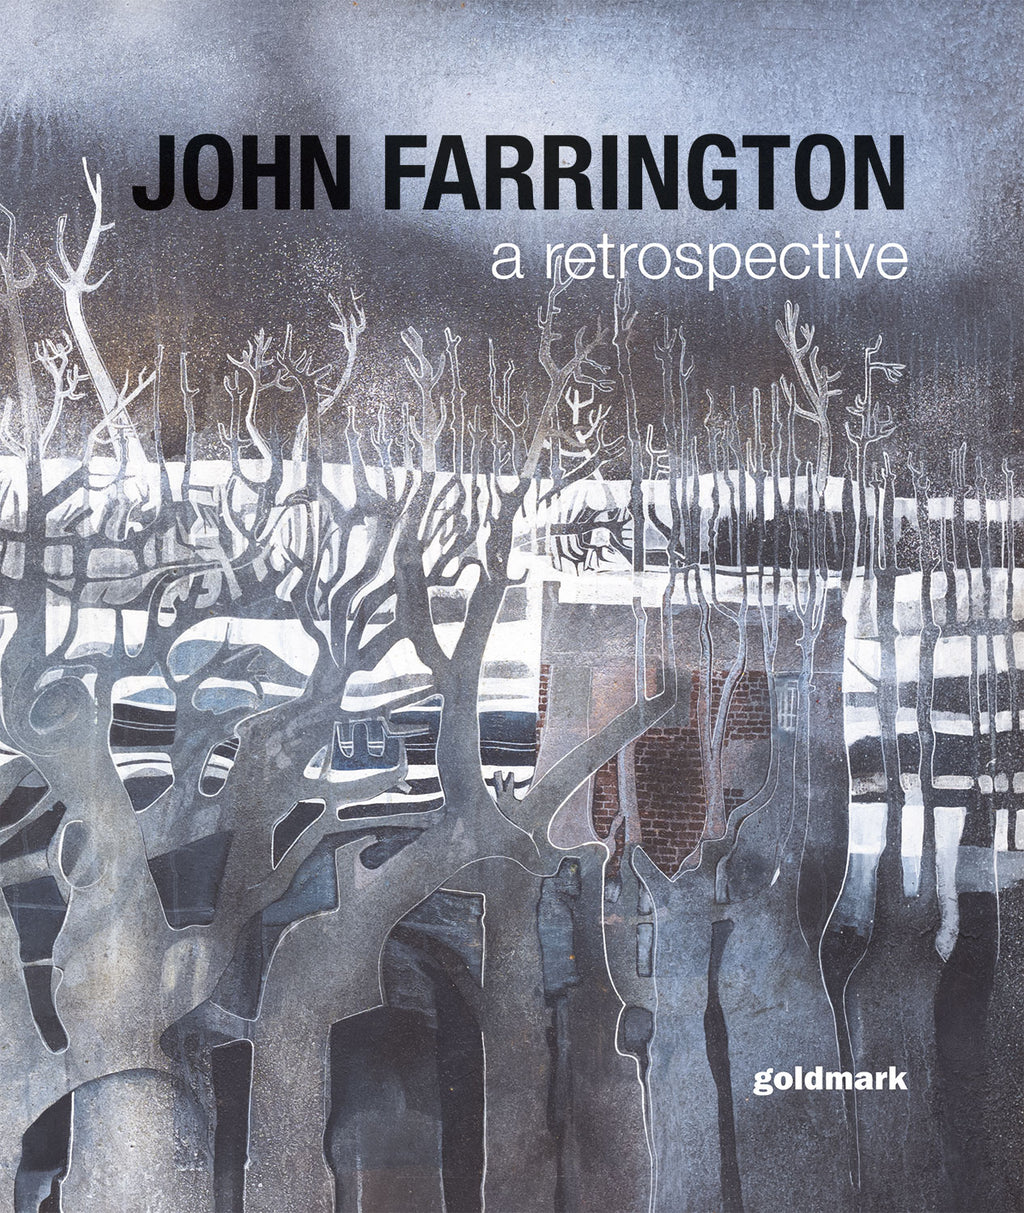 John Farrington